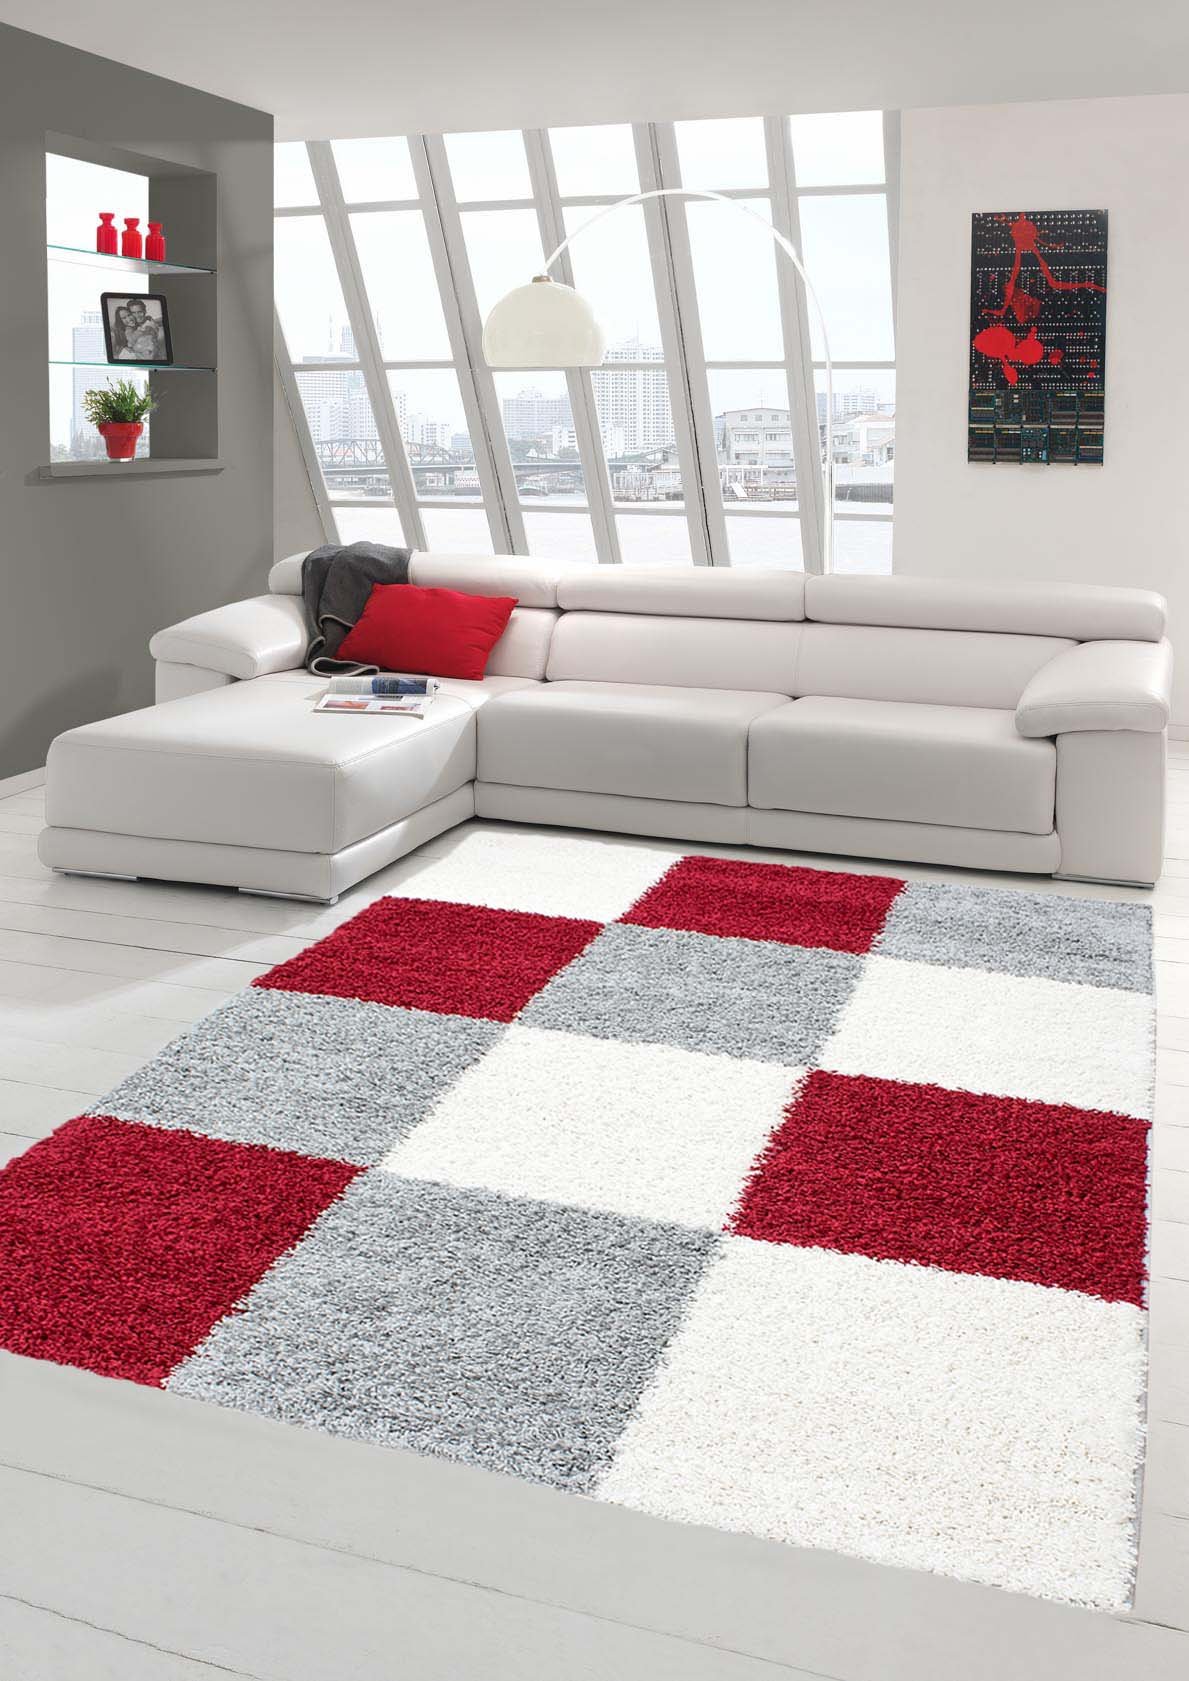 Shaggy Teppich Hochflor Langflor Teppich Wohnzimmer Teppich Gemustert in Karo Design Rot Grau Creme Größe 120x170 cm